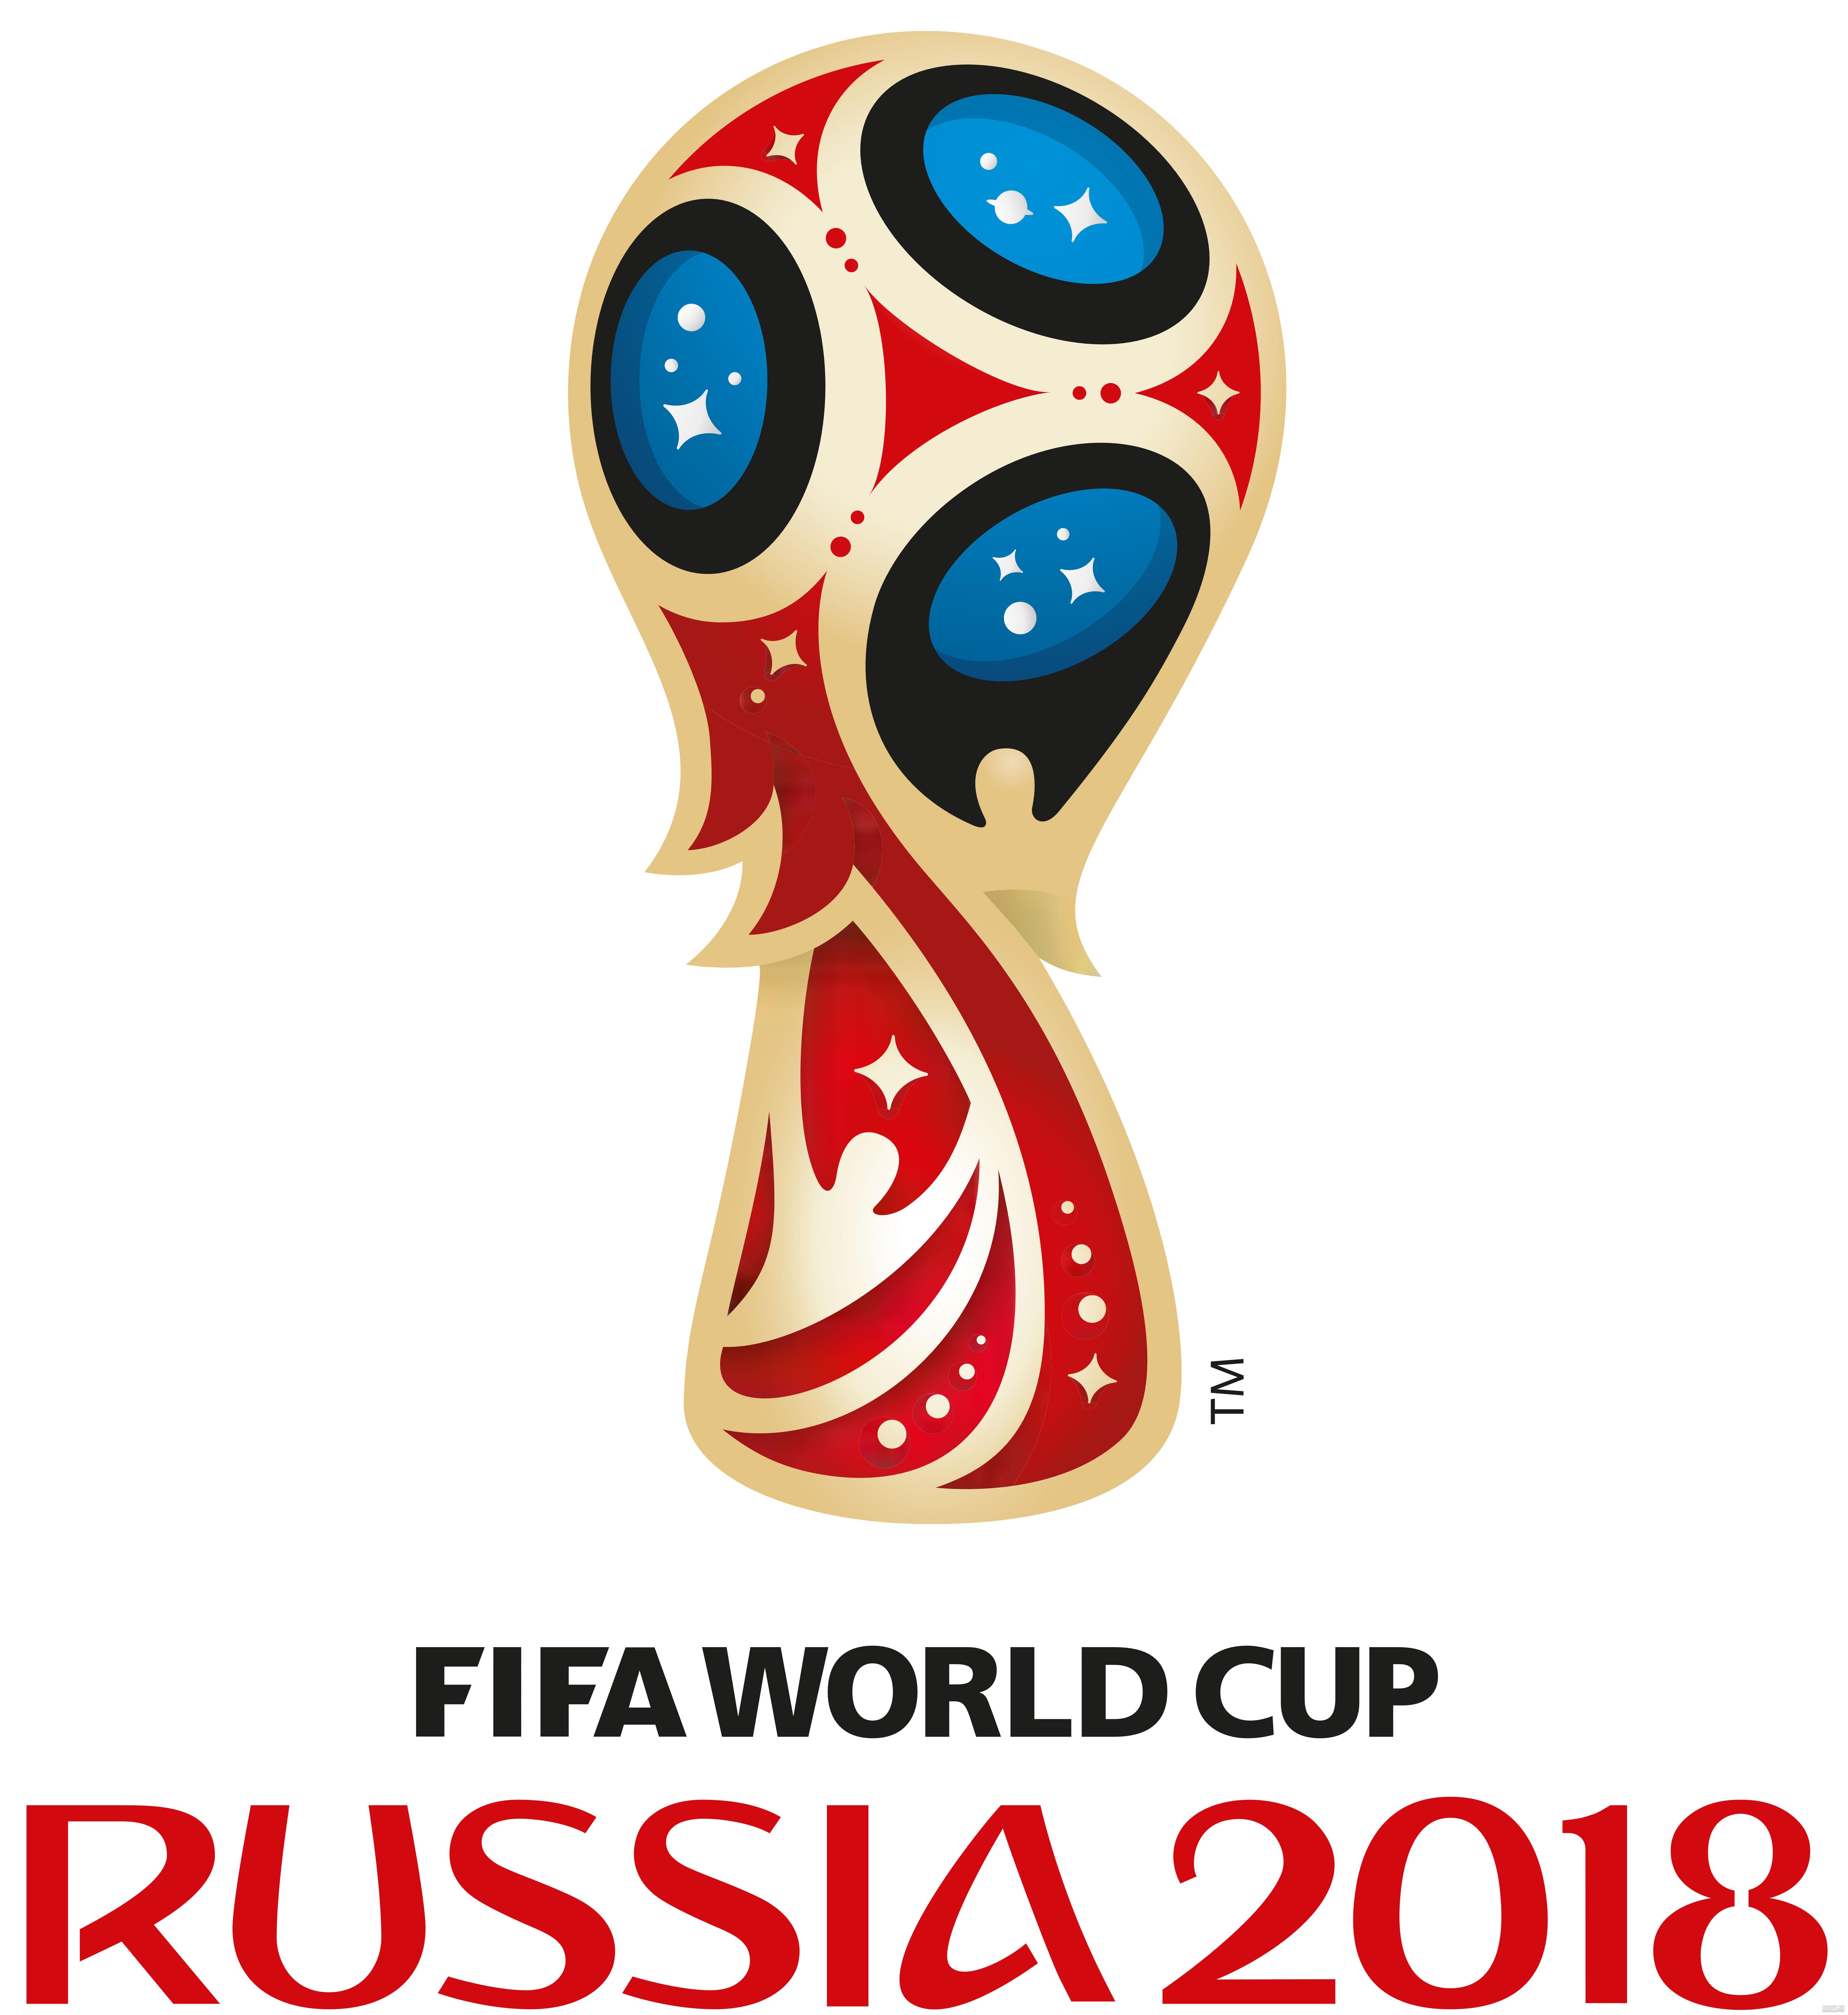 دانلود عکس جام جهانی رونالدو